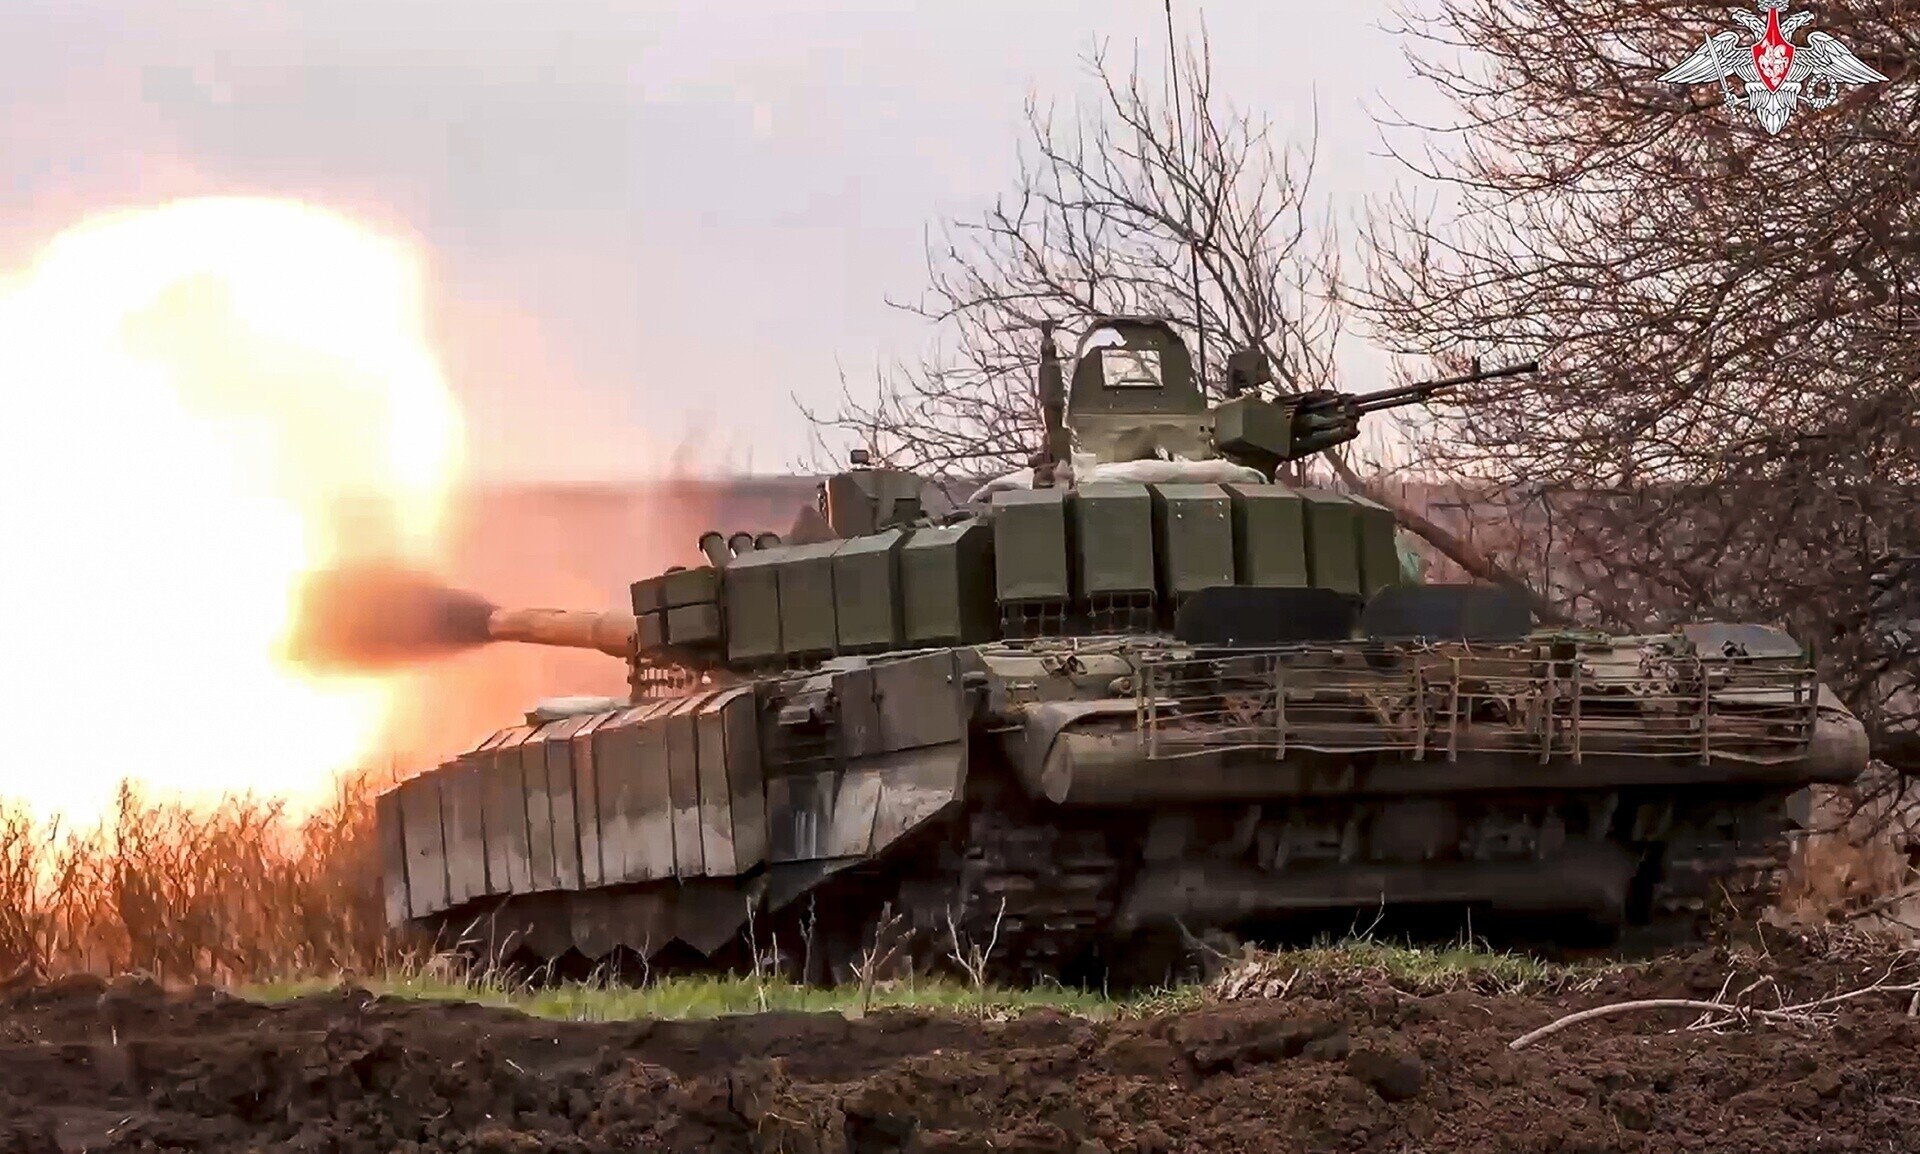 Πόλεμος στην Ουκρανία: Η Ρωσία ανακοίνωσε την κατάληψη στρατηγικής σημασίας χωριού